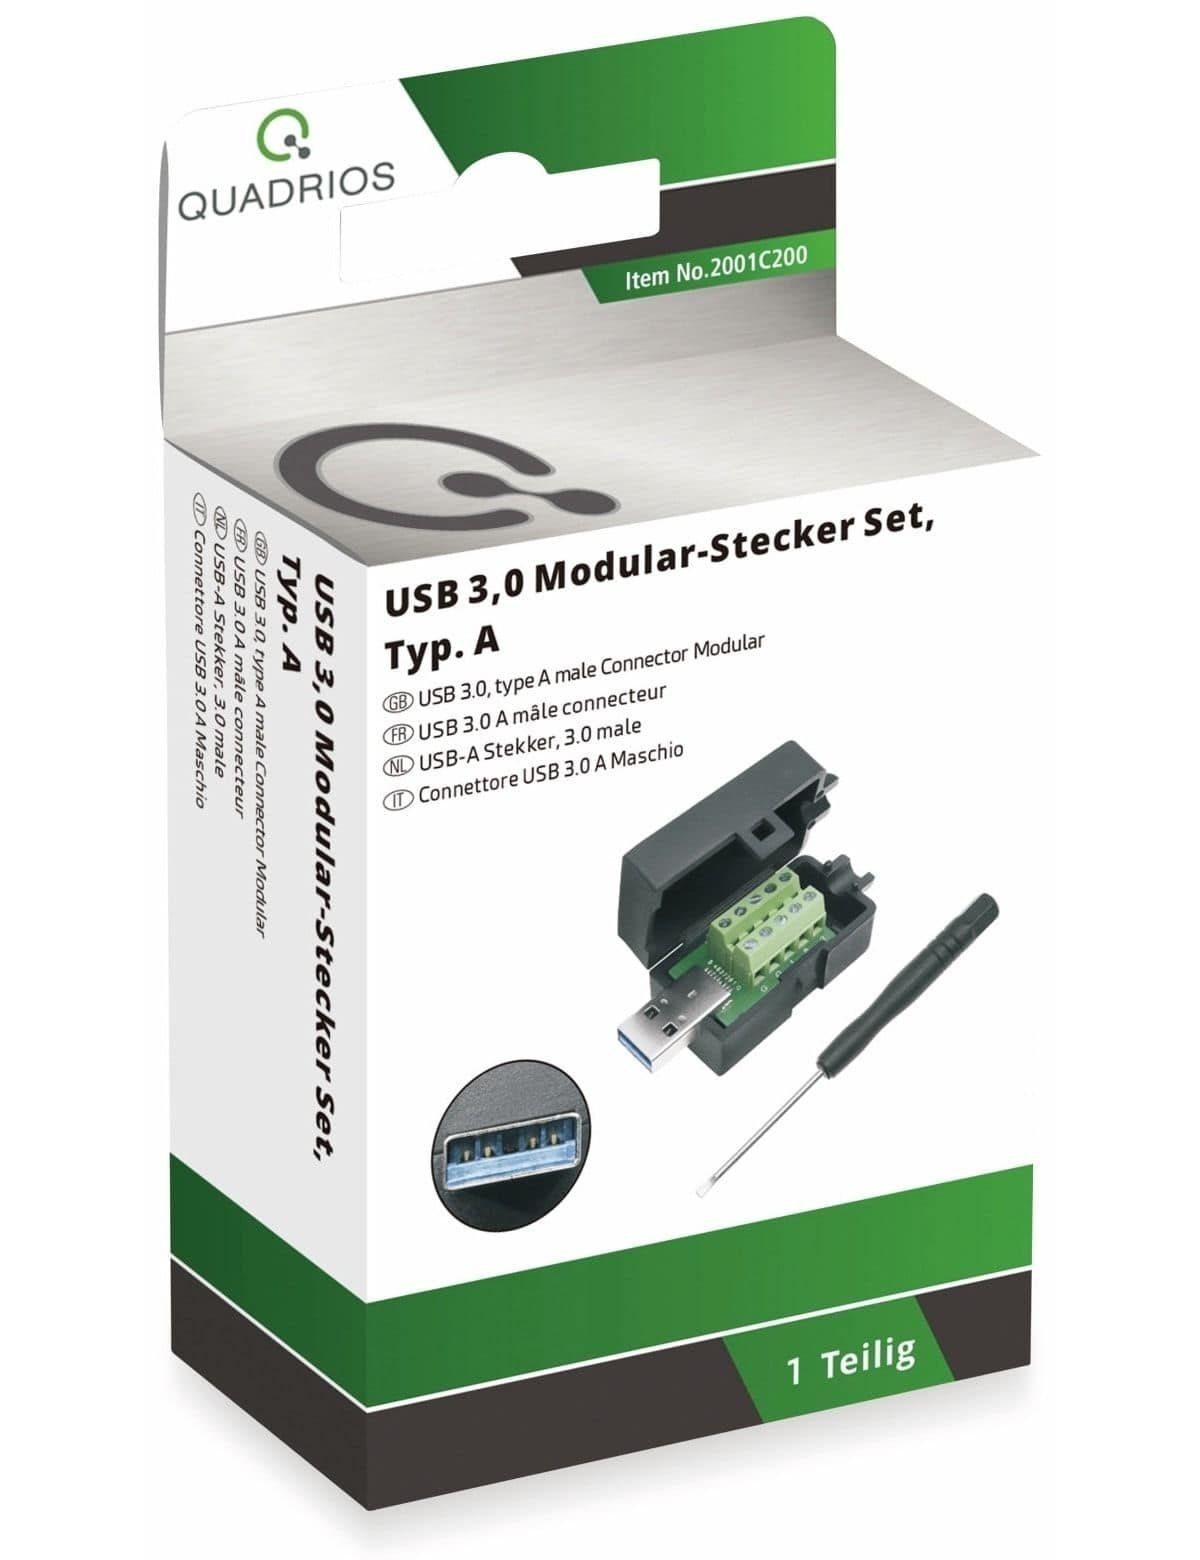 Quadrios Klemmen QUADRIOS, 2001C200, 3.0 USB-Modular-Set, USB 